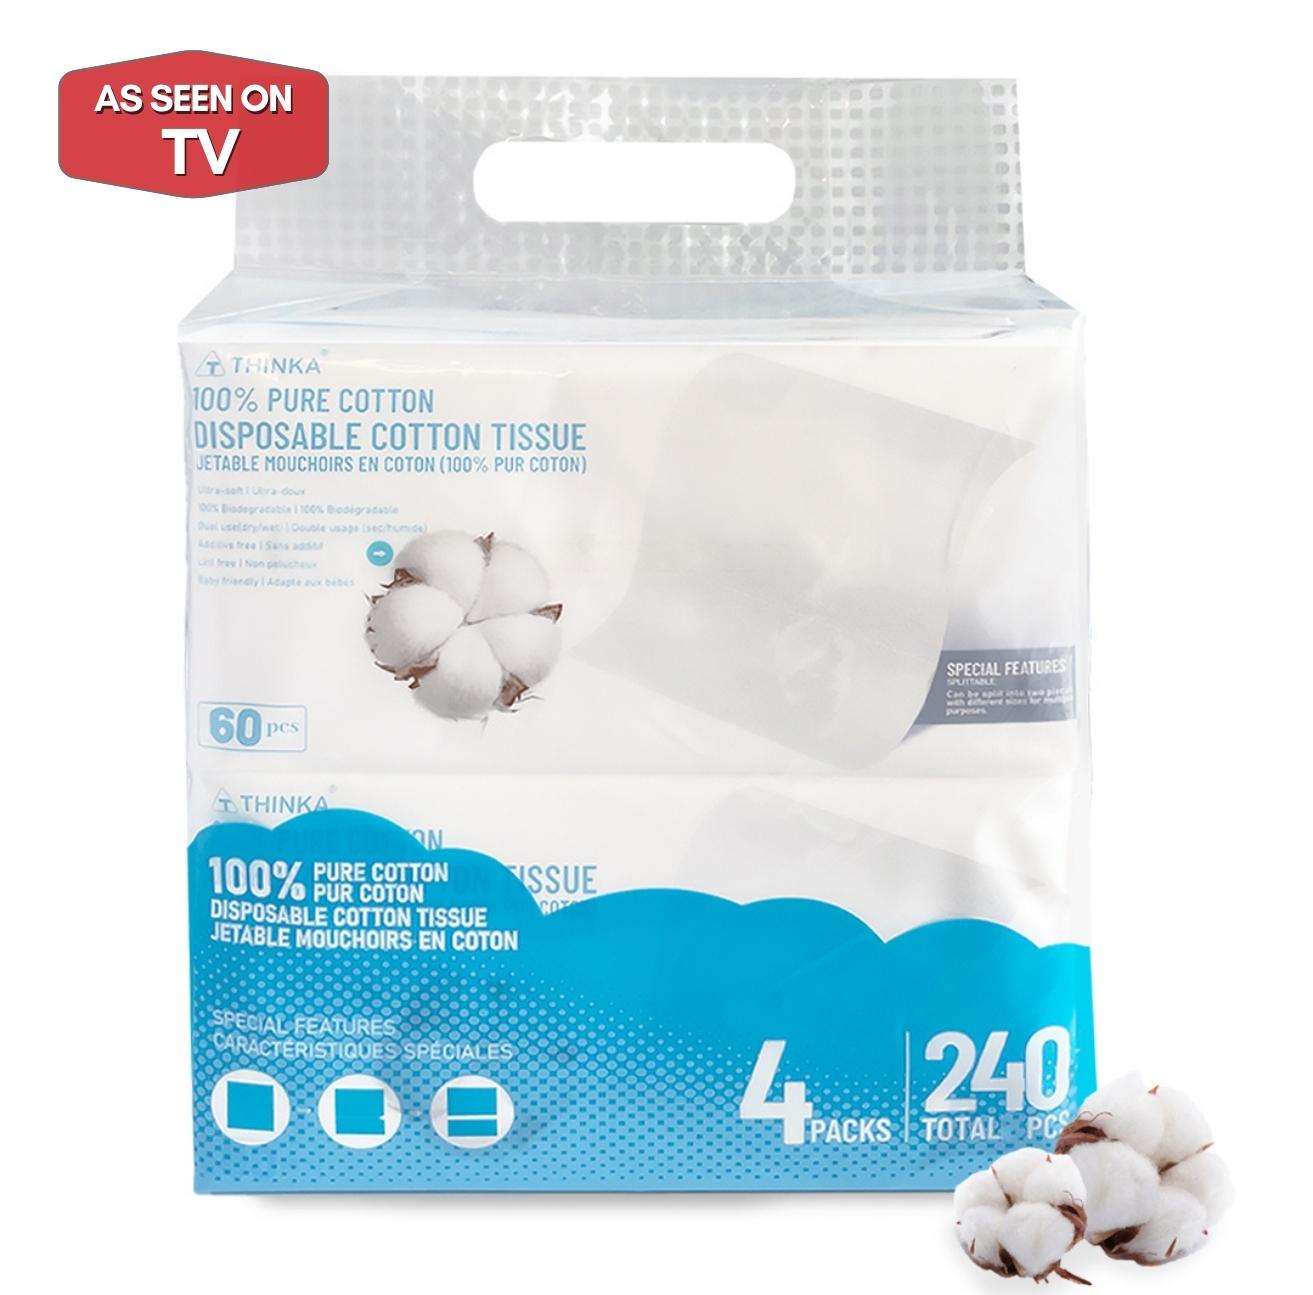 100% Pure Cotton Disposable Cotton Tissue (4 packs /240pcs